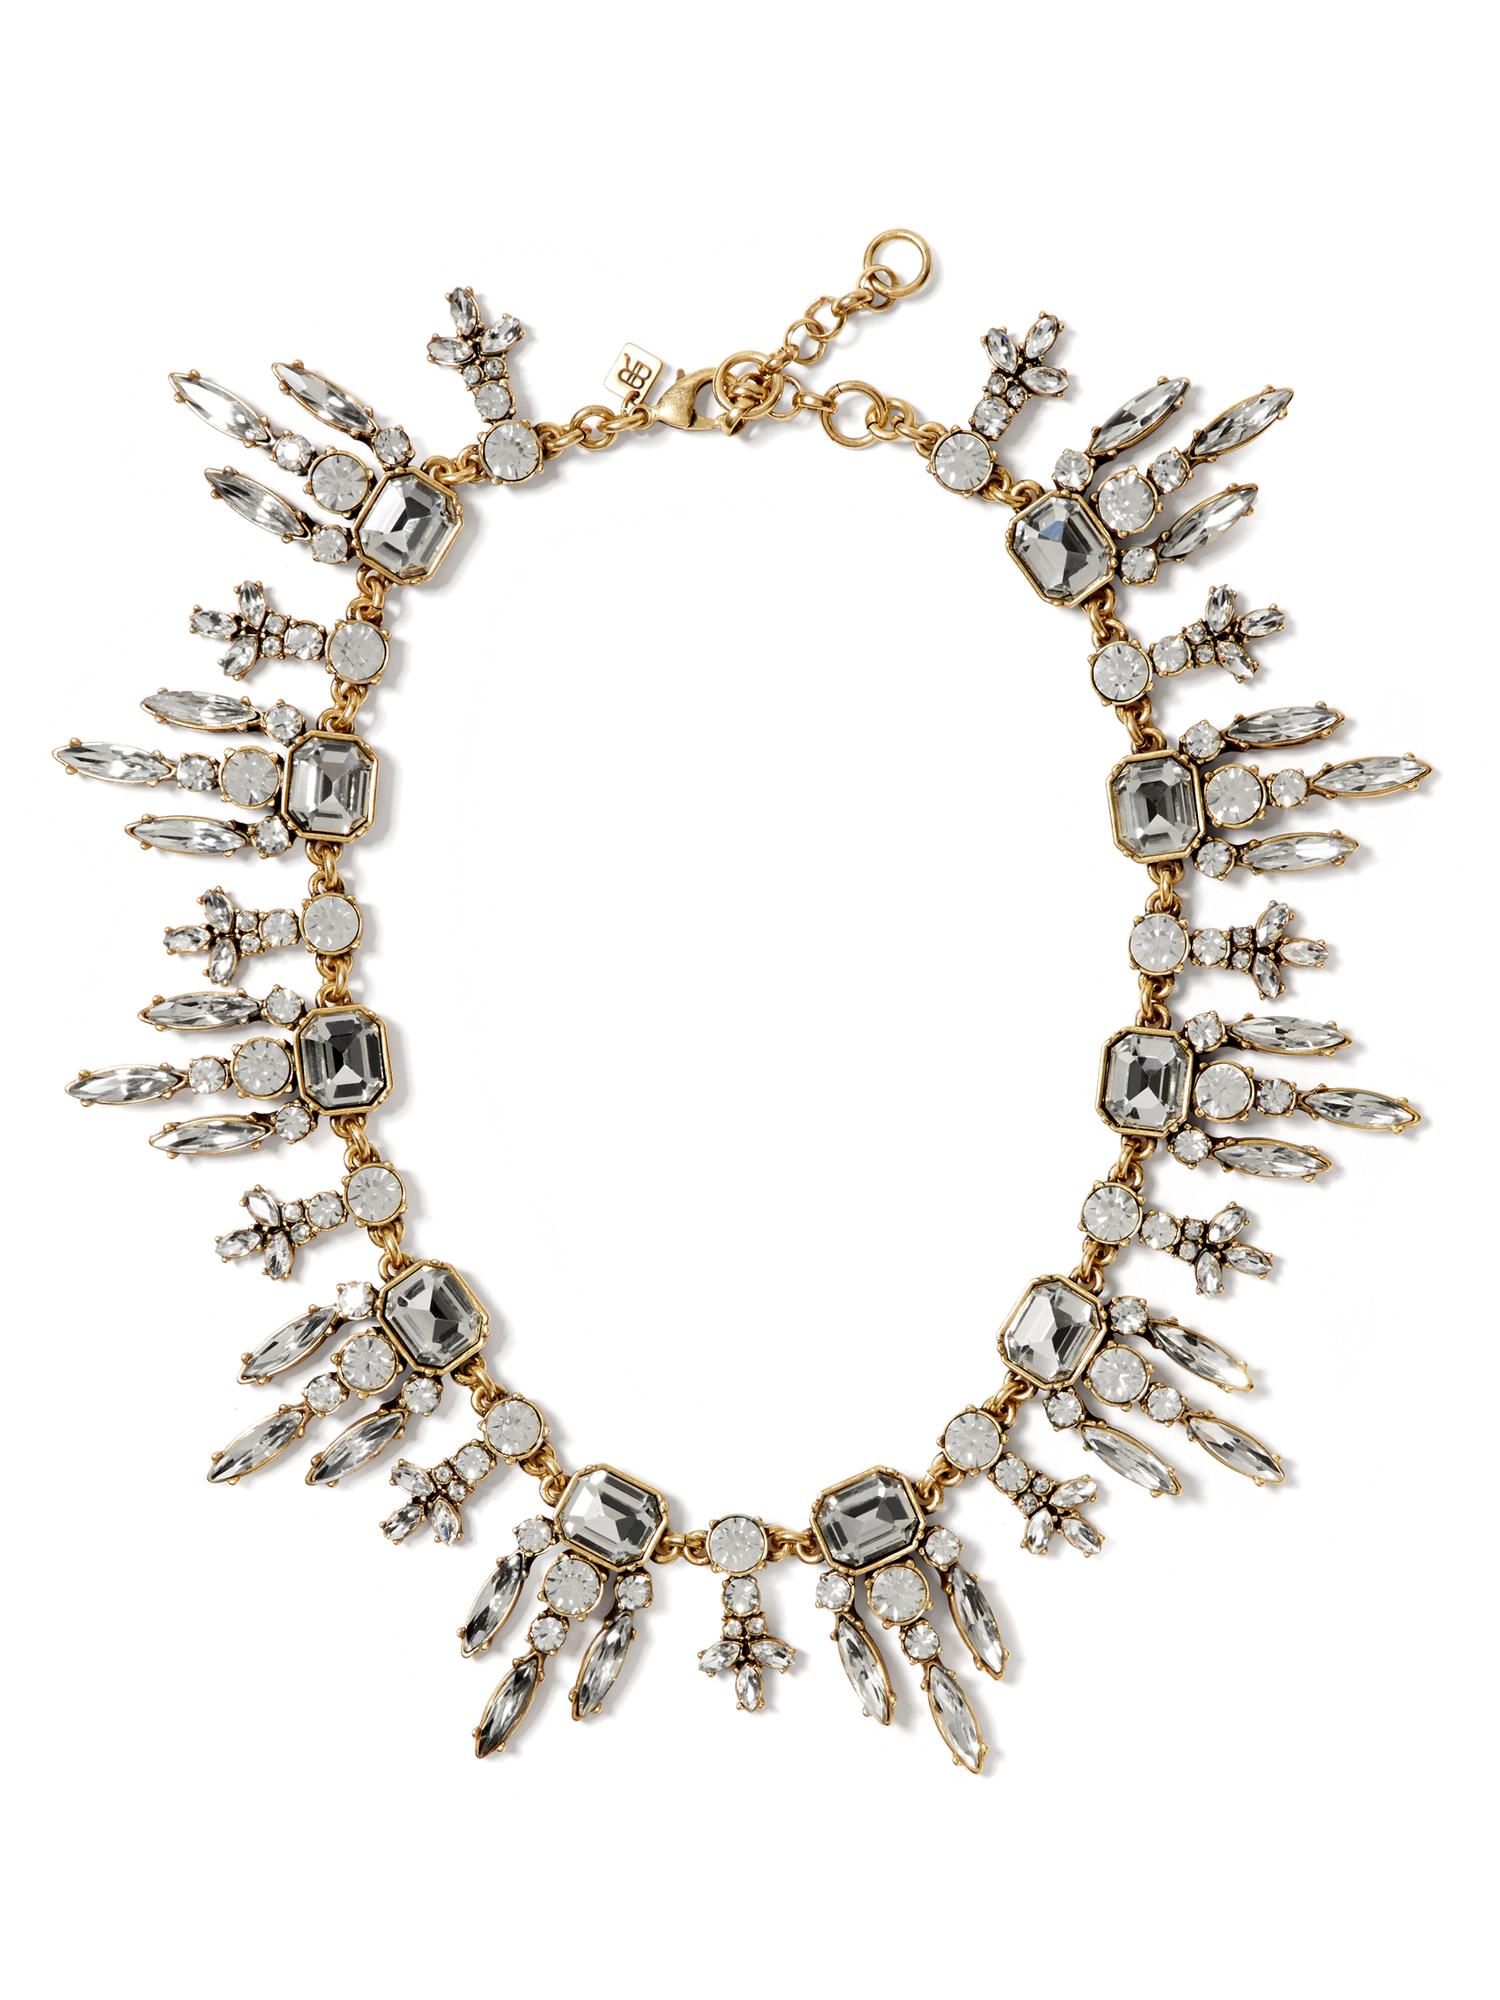 Art Nouveau Crystal Necklace